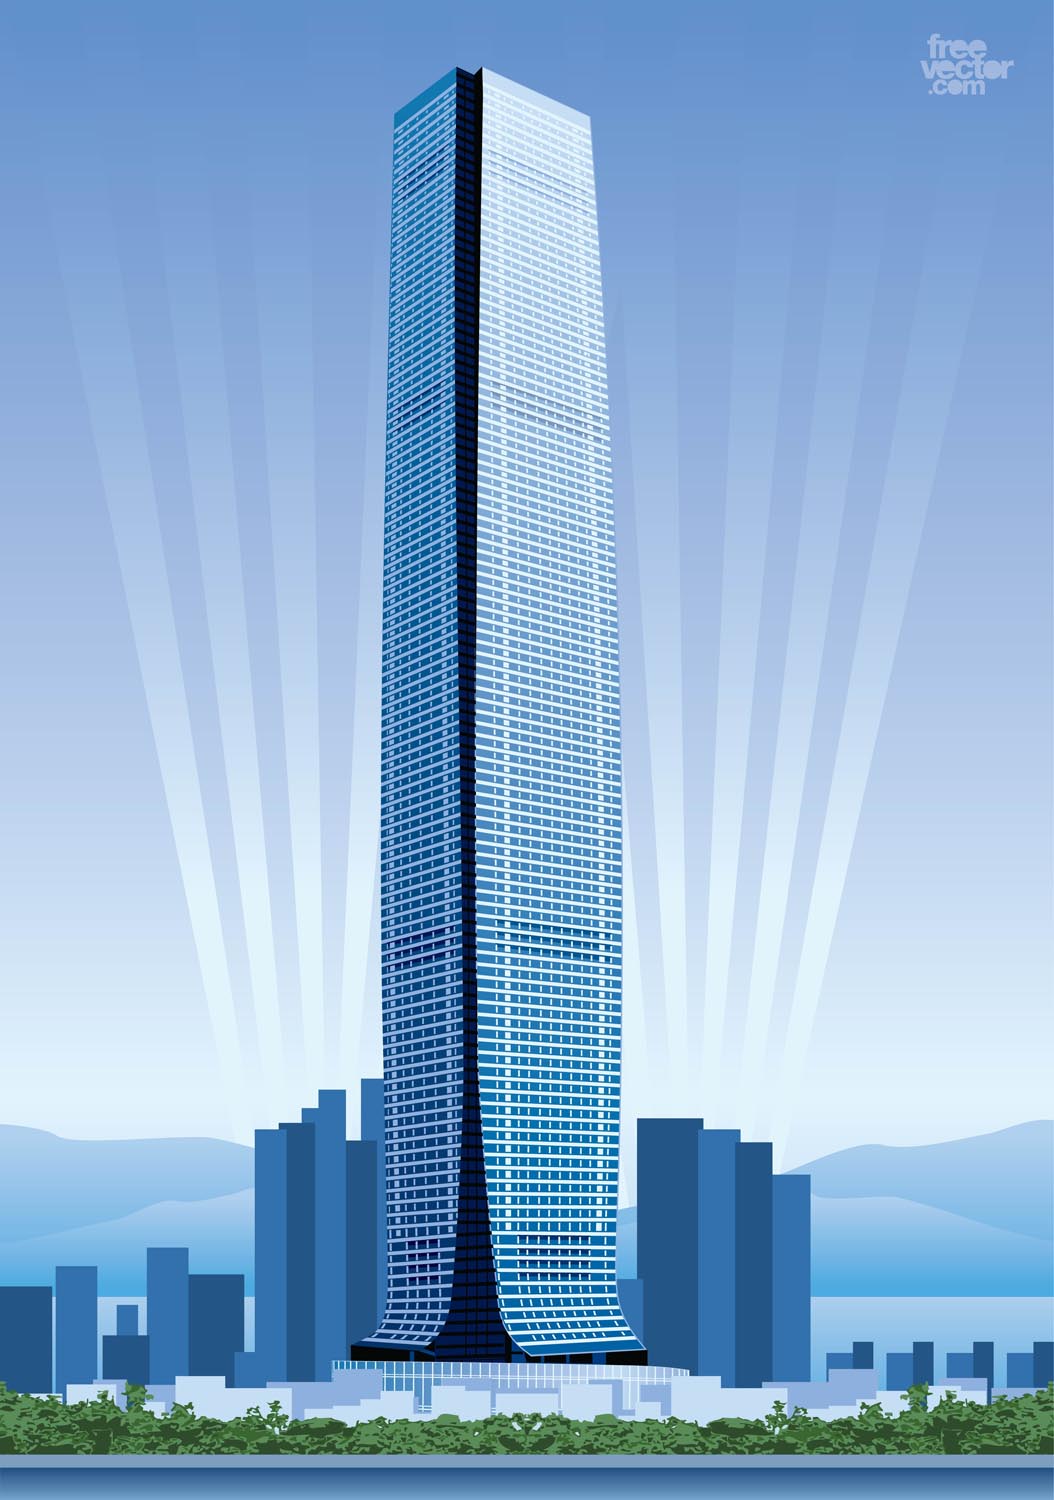 Hong Kong Skyscraper Vector Art & Graphics | freevector.com